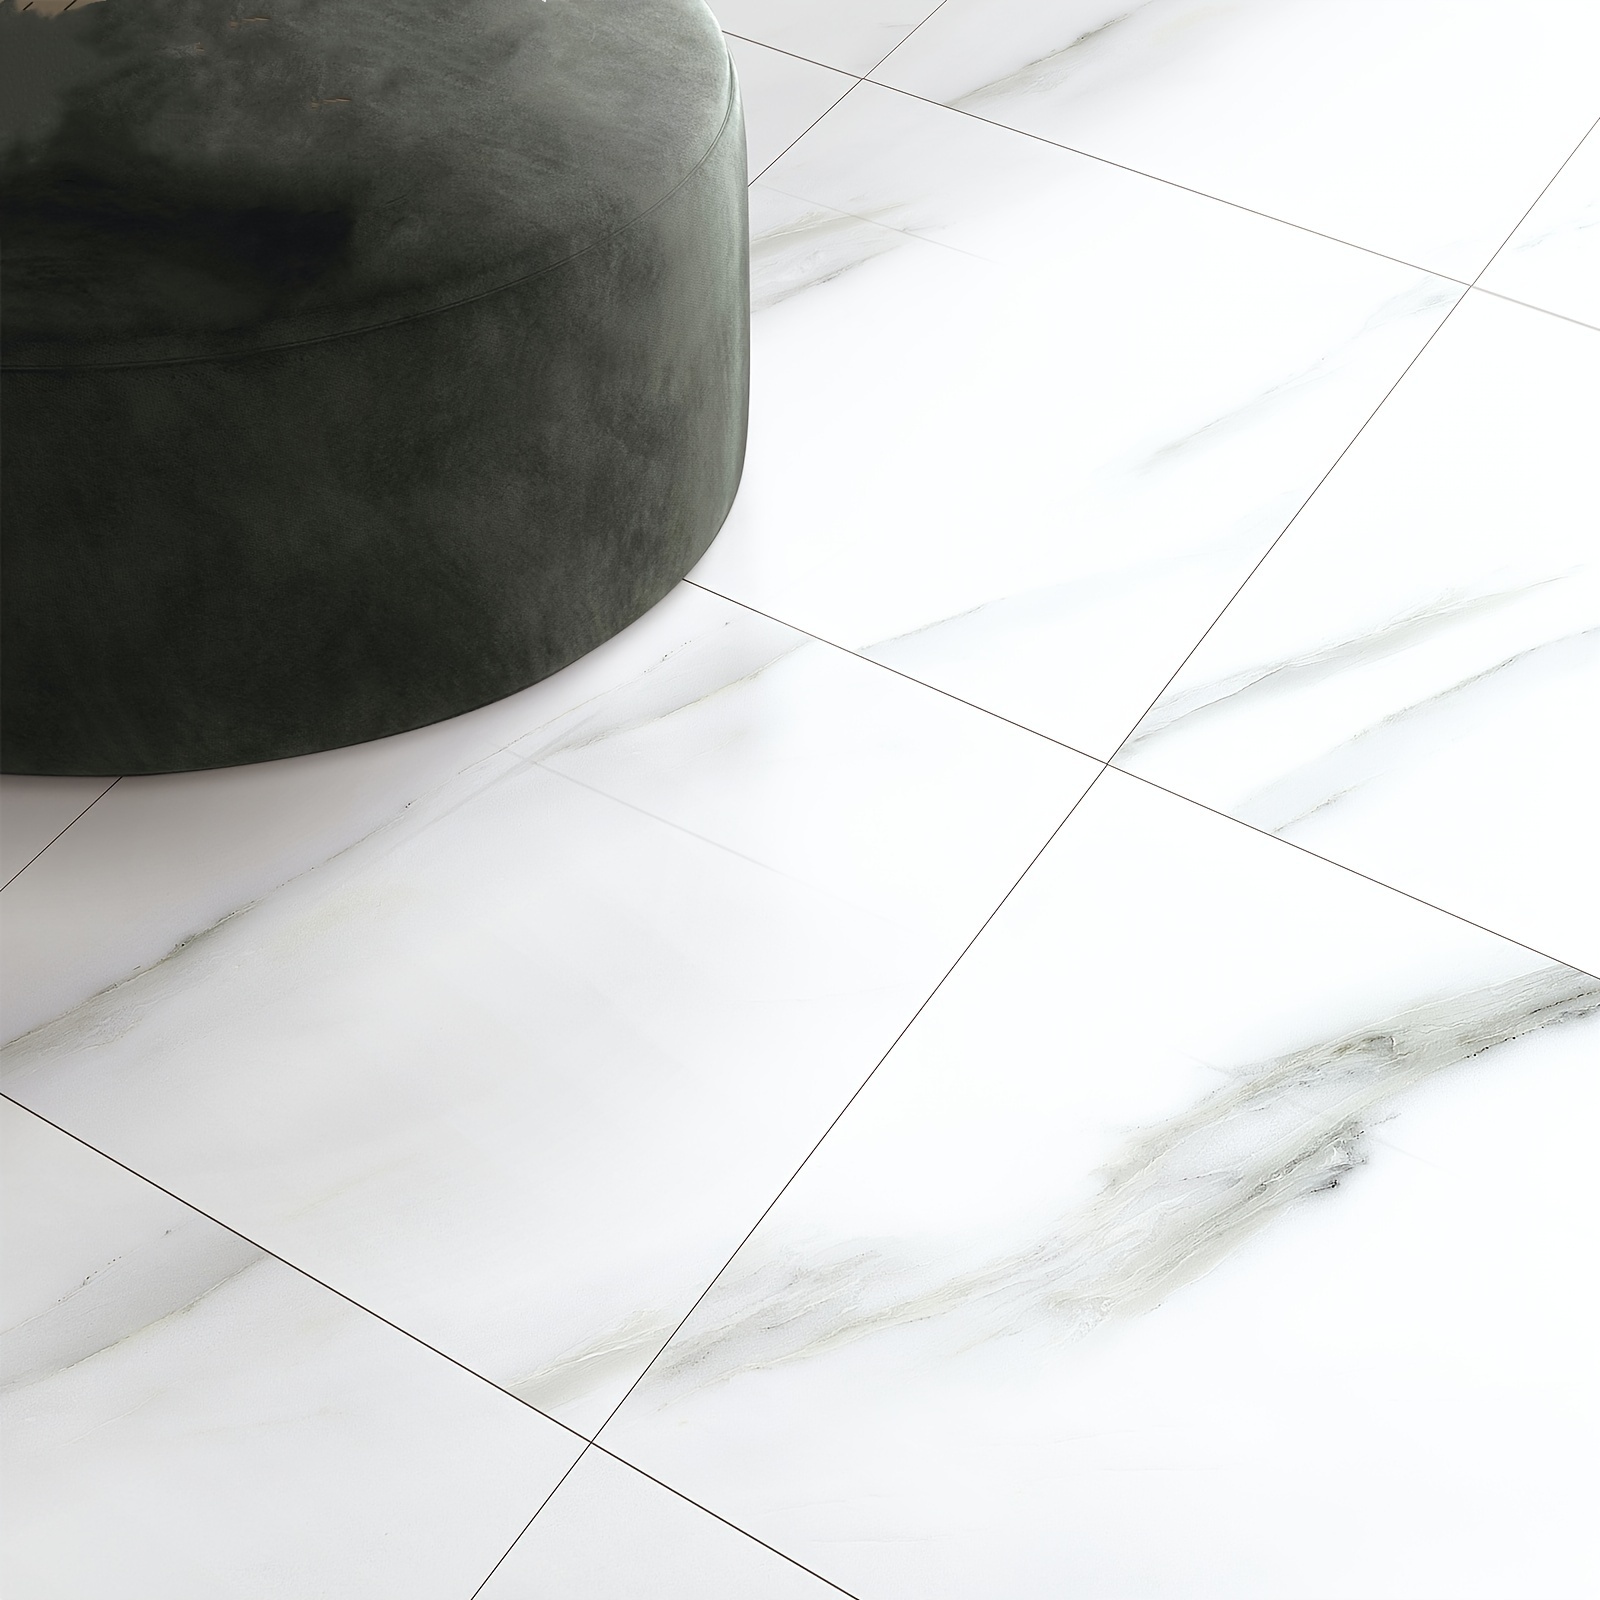 marble peel stick floor tiles vinyl floor tiles stick tiles